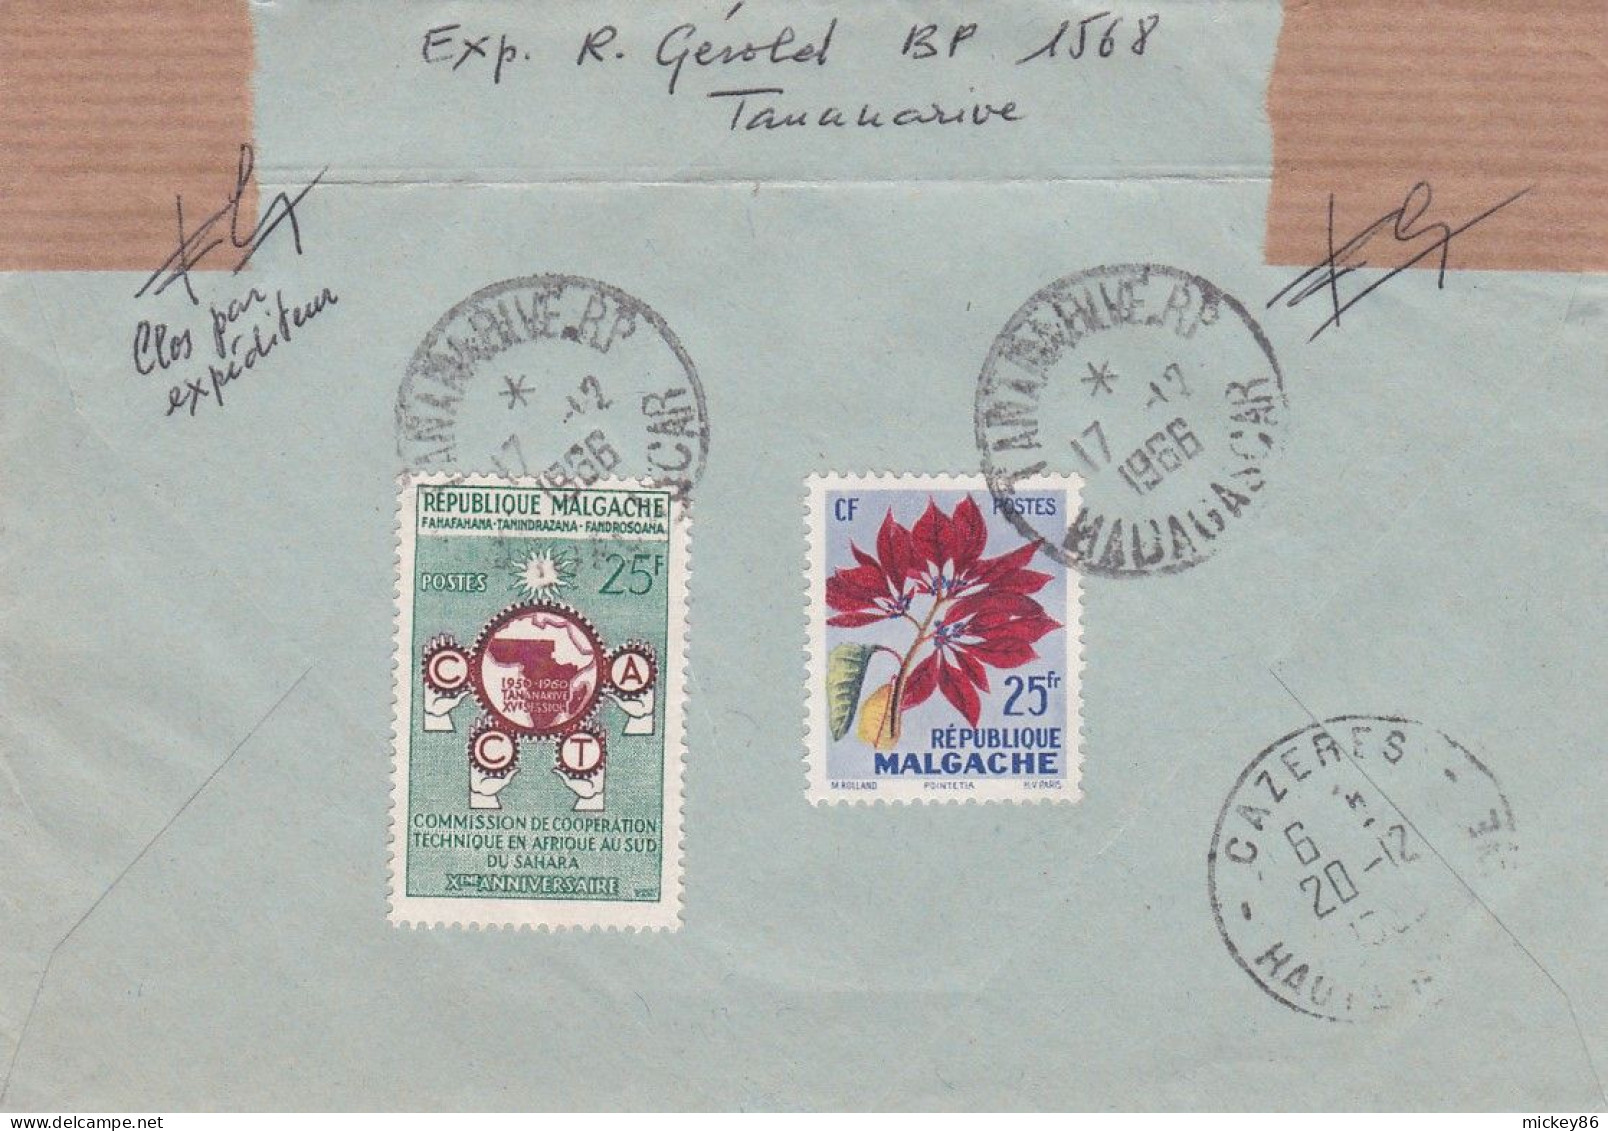 Madagascar--1966--lettre Recommandée De TANANARIVE  Pour CAZERES-31...timbres Recto-verso ..cachet  17-6-1966 - Madagascar (1960-...)